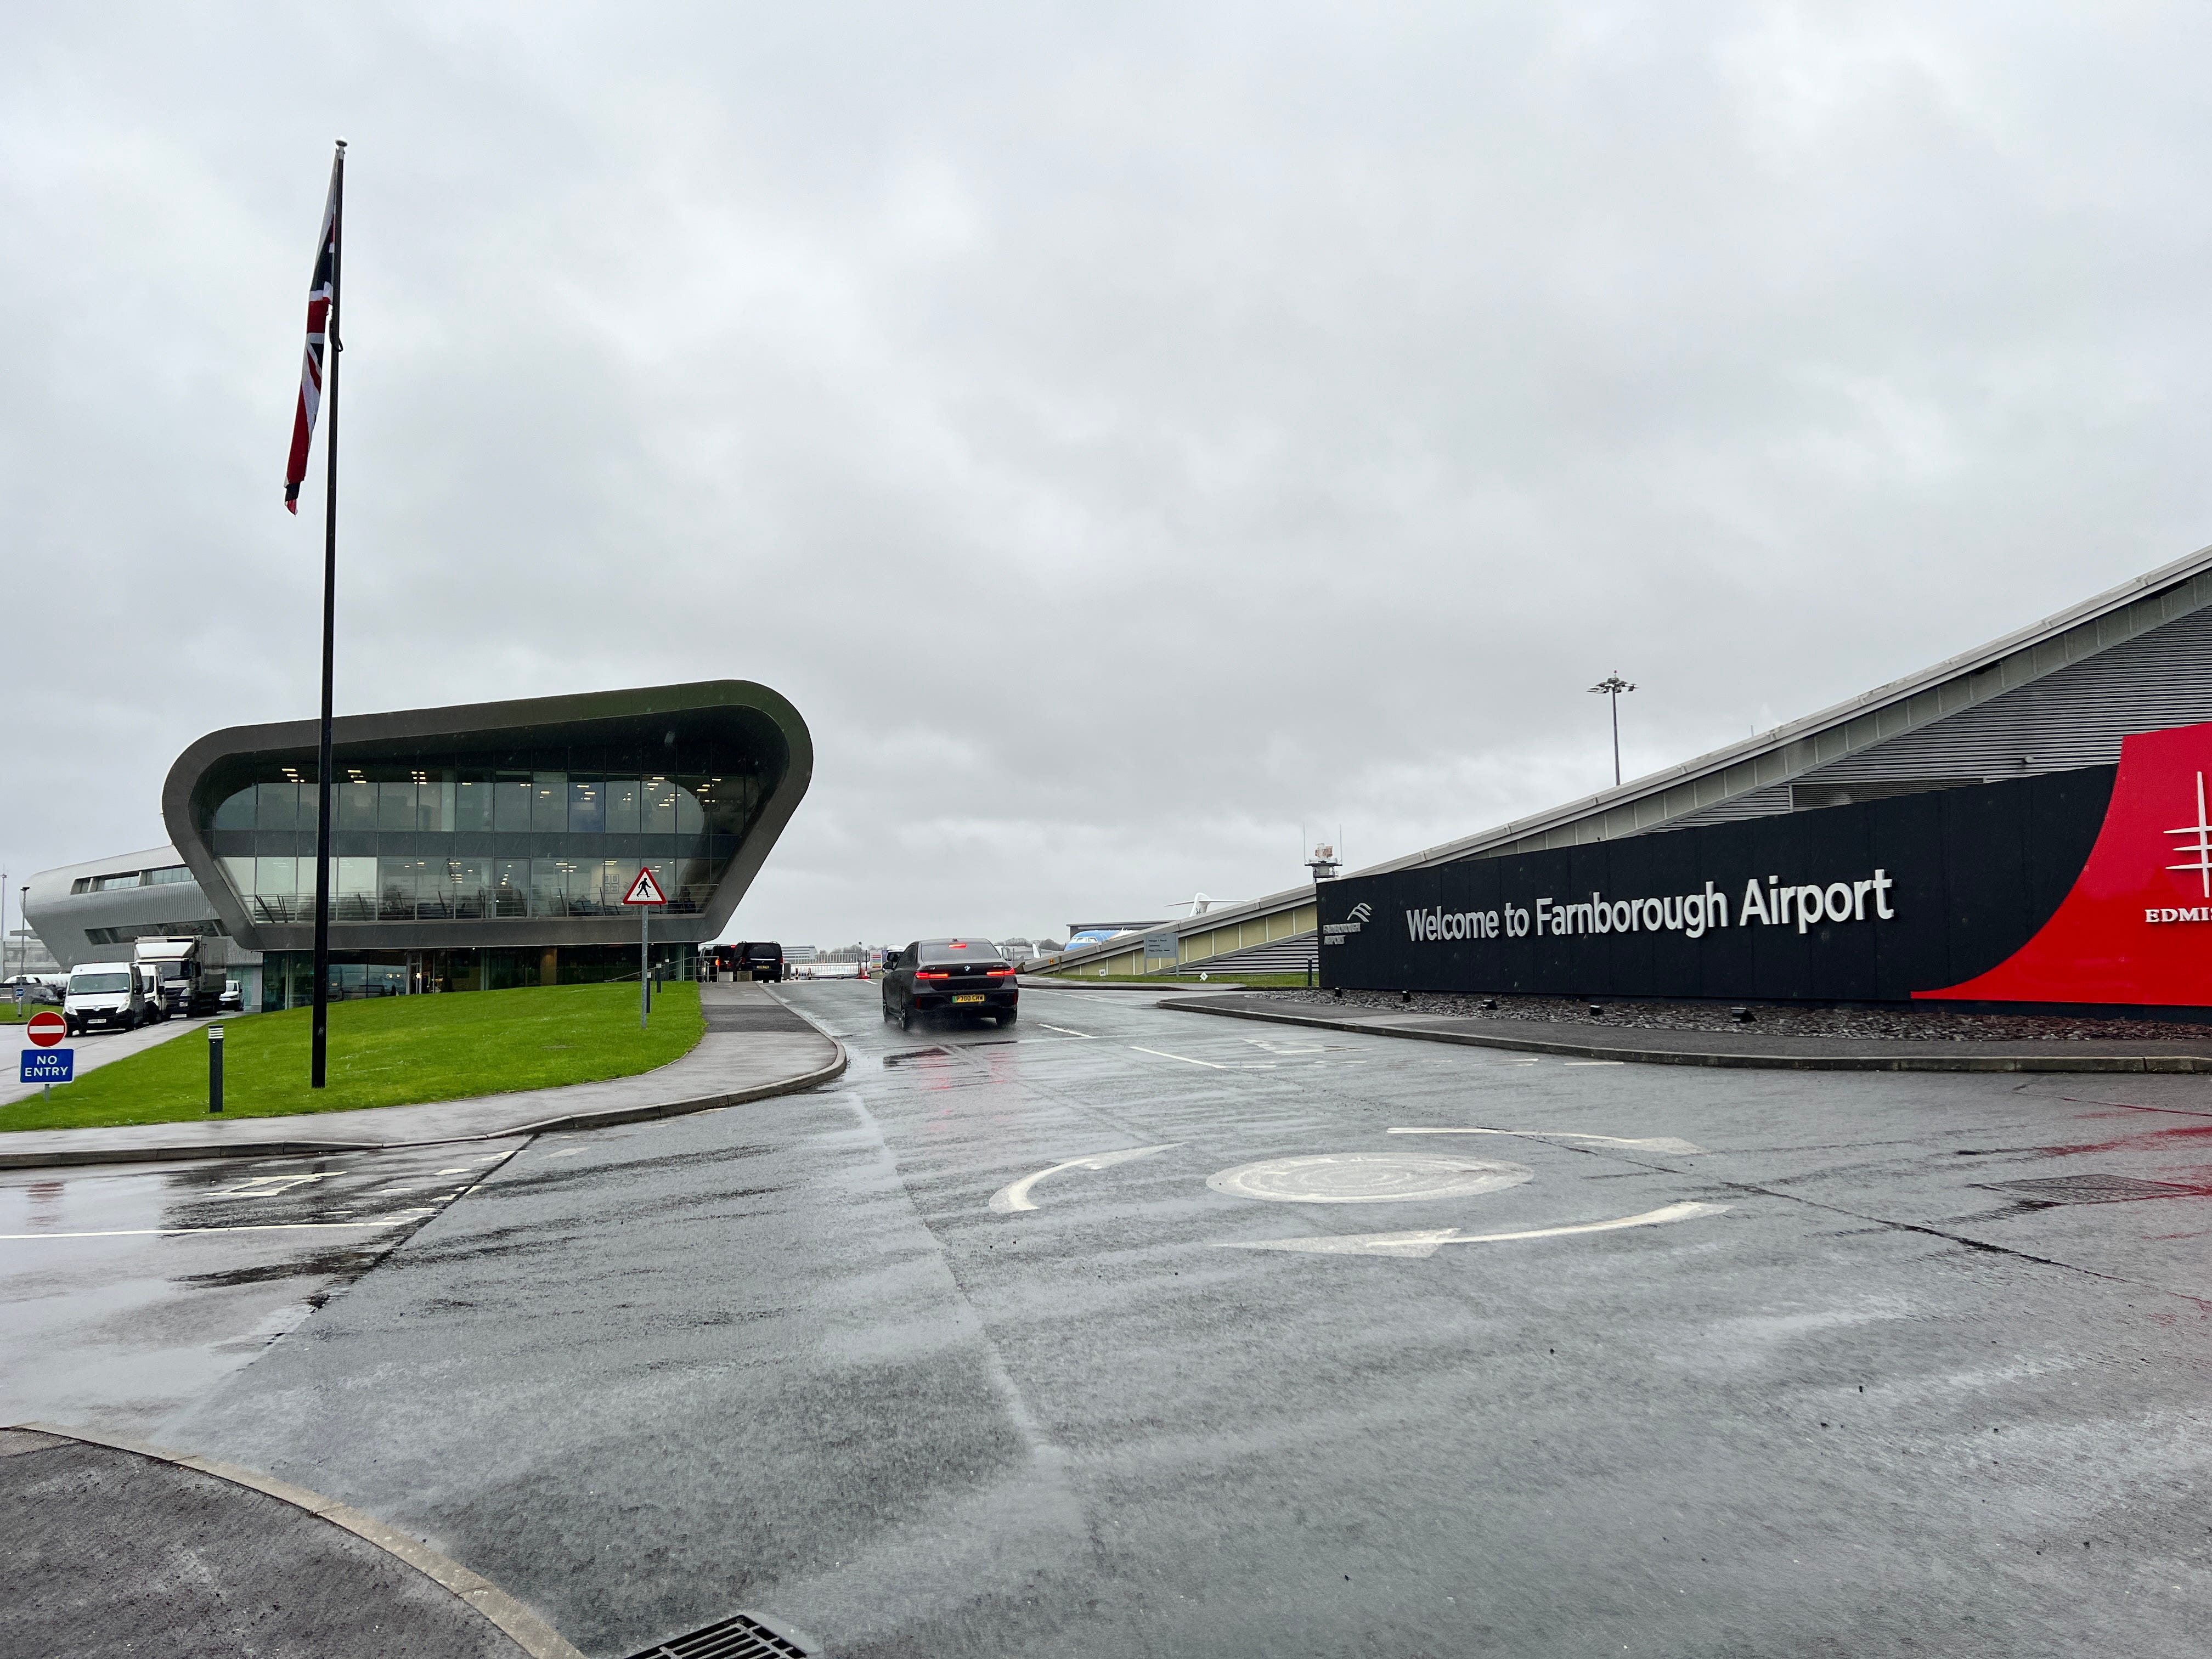 Der Eingang zum Flughafen Farnborough zeigt ein Schild und ein modernes Terminalgebäude, während ein Auto vorbeifährt.